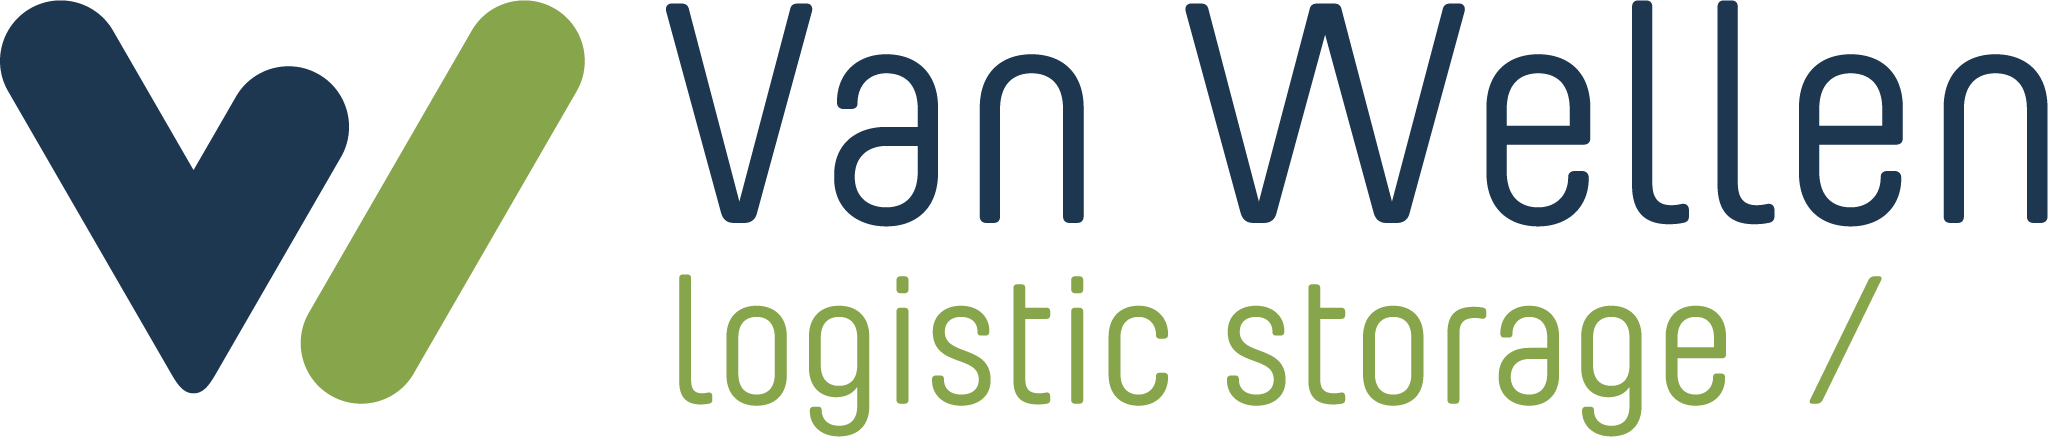 Van Wellen Logistic Storage_logo